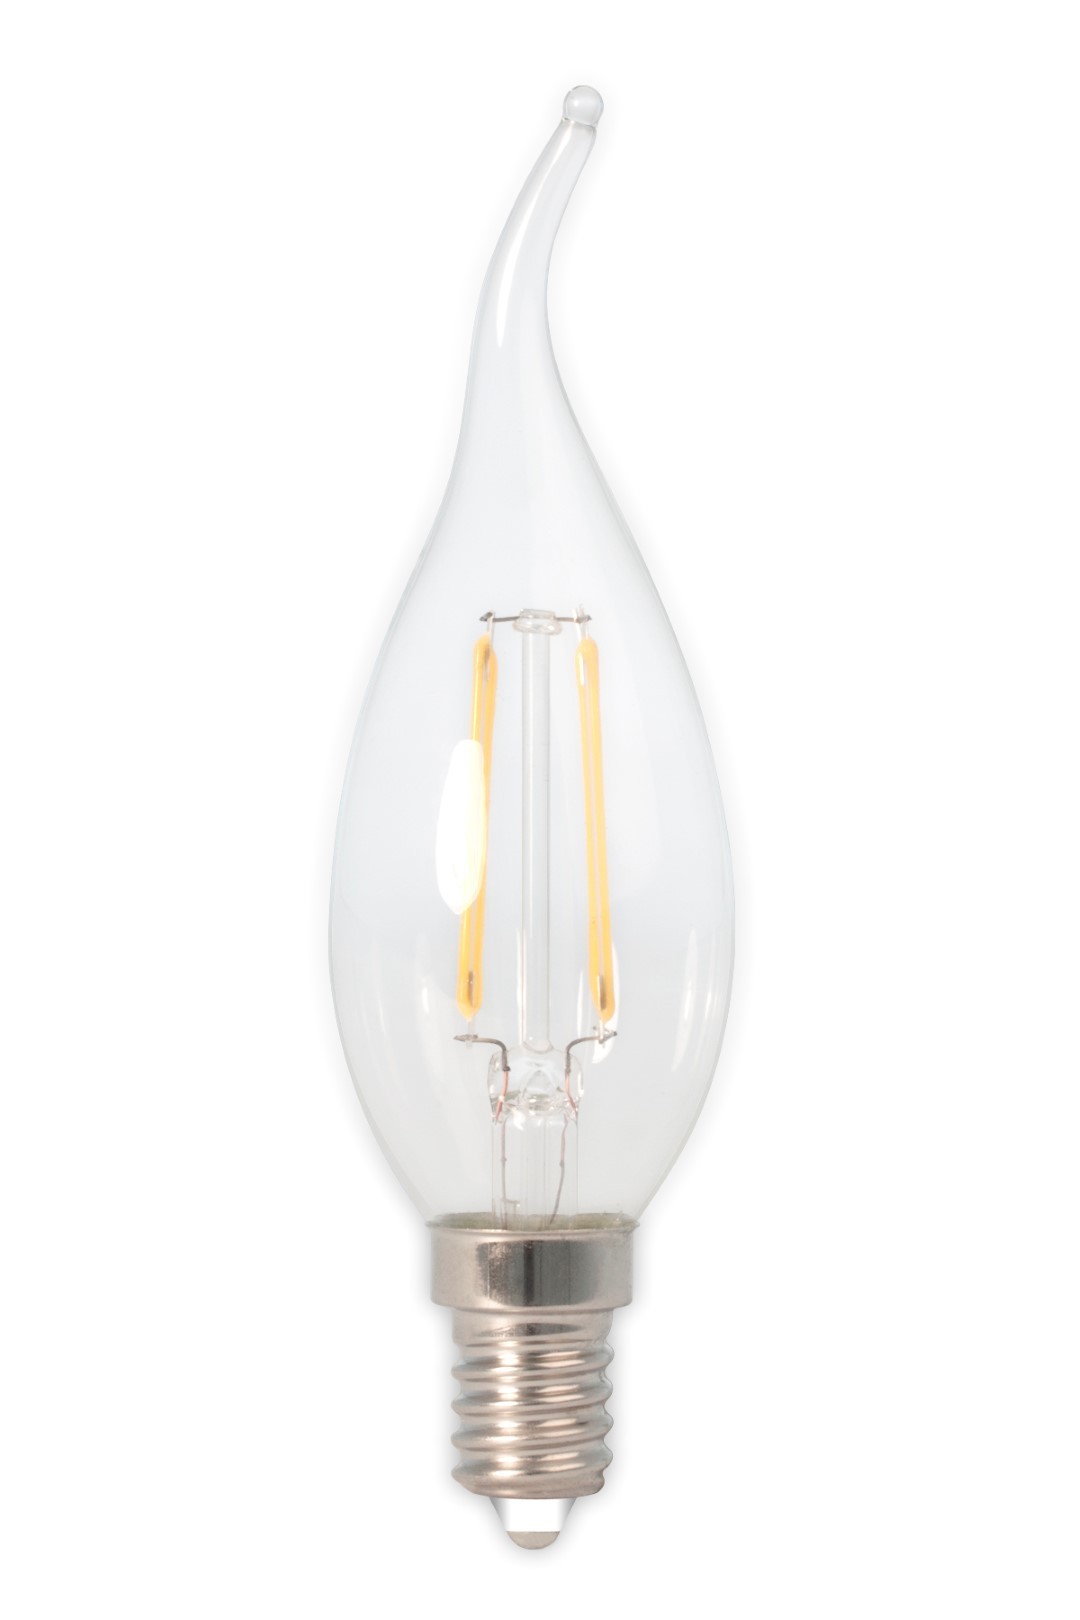 LED volglas Filament Tip-Kaarslamp 240V 3,5W 350lm E14 BXS35, Helder 2700K CRI80 Dimbaar - Calex